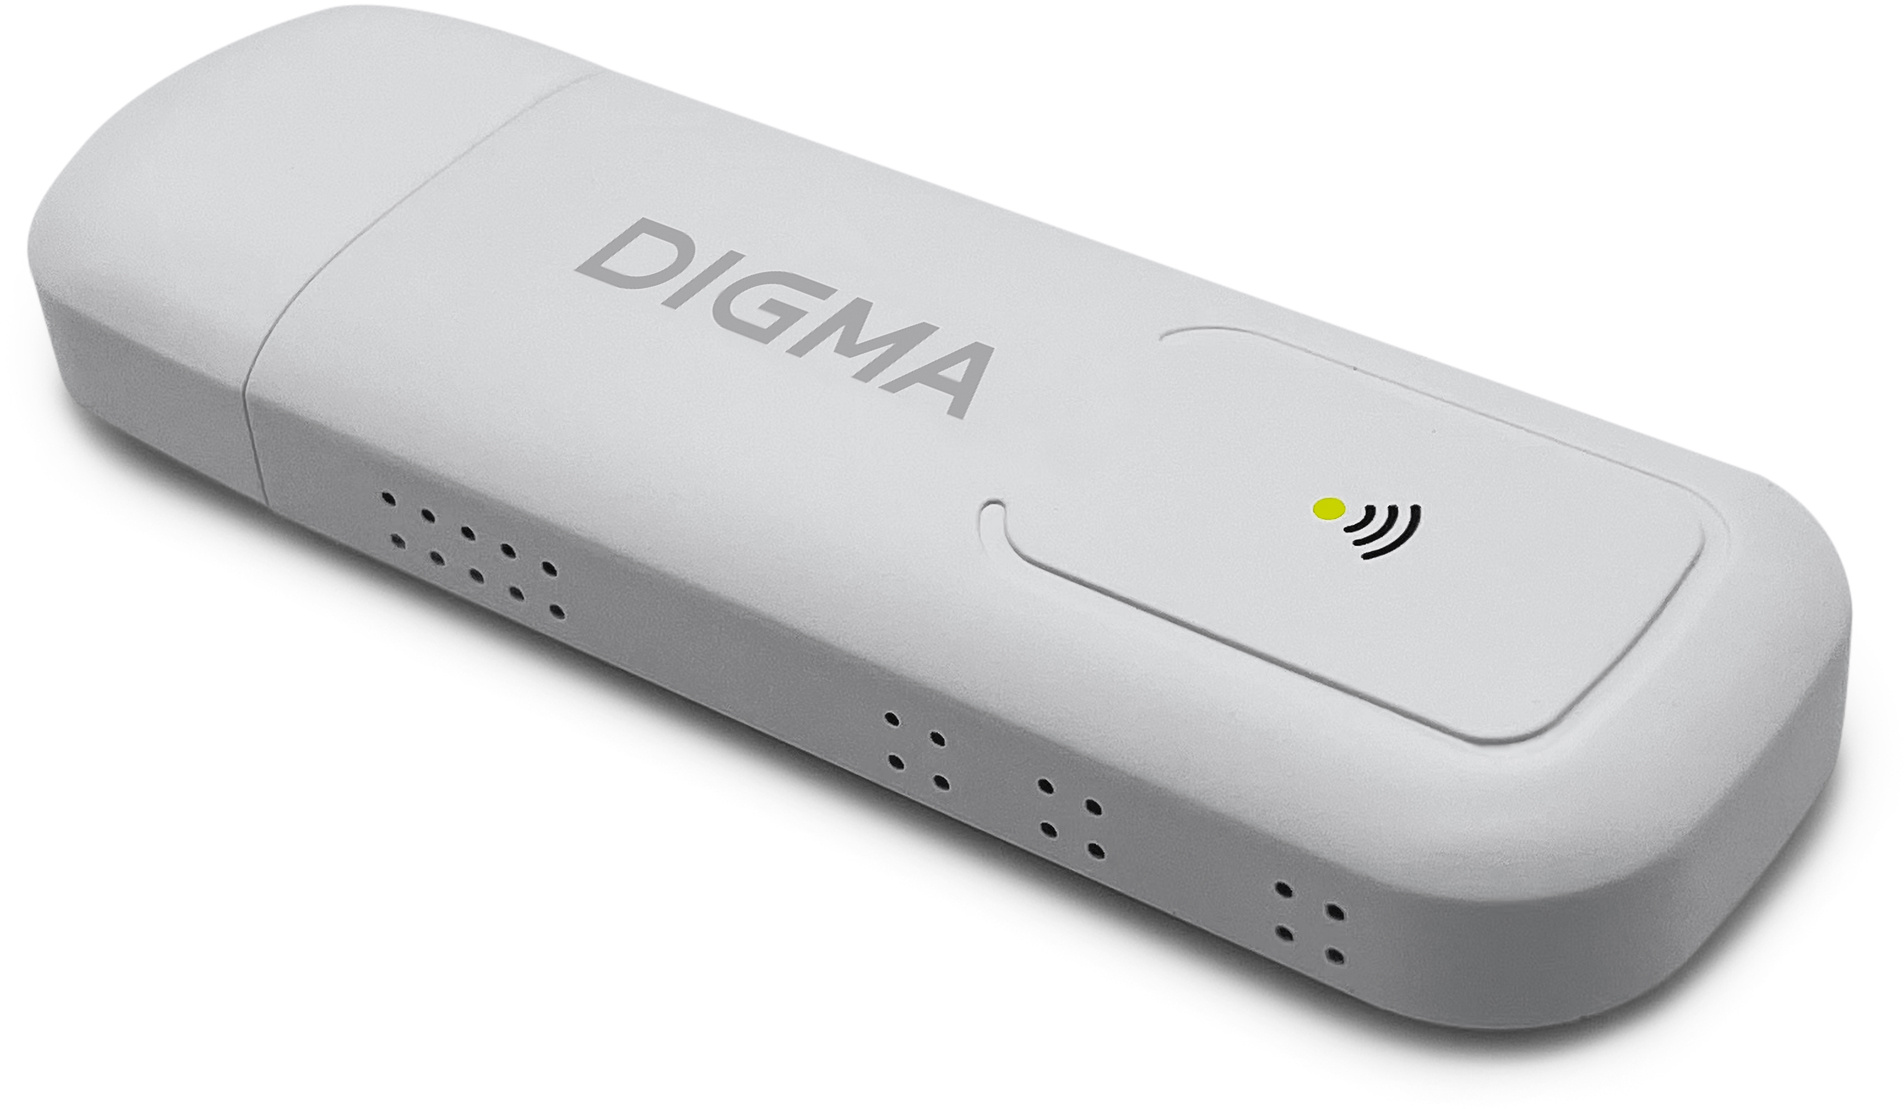 Модем Digma Dongle WiFi DW1960 3G/4G внешний, белый